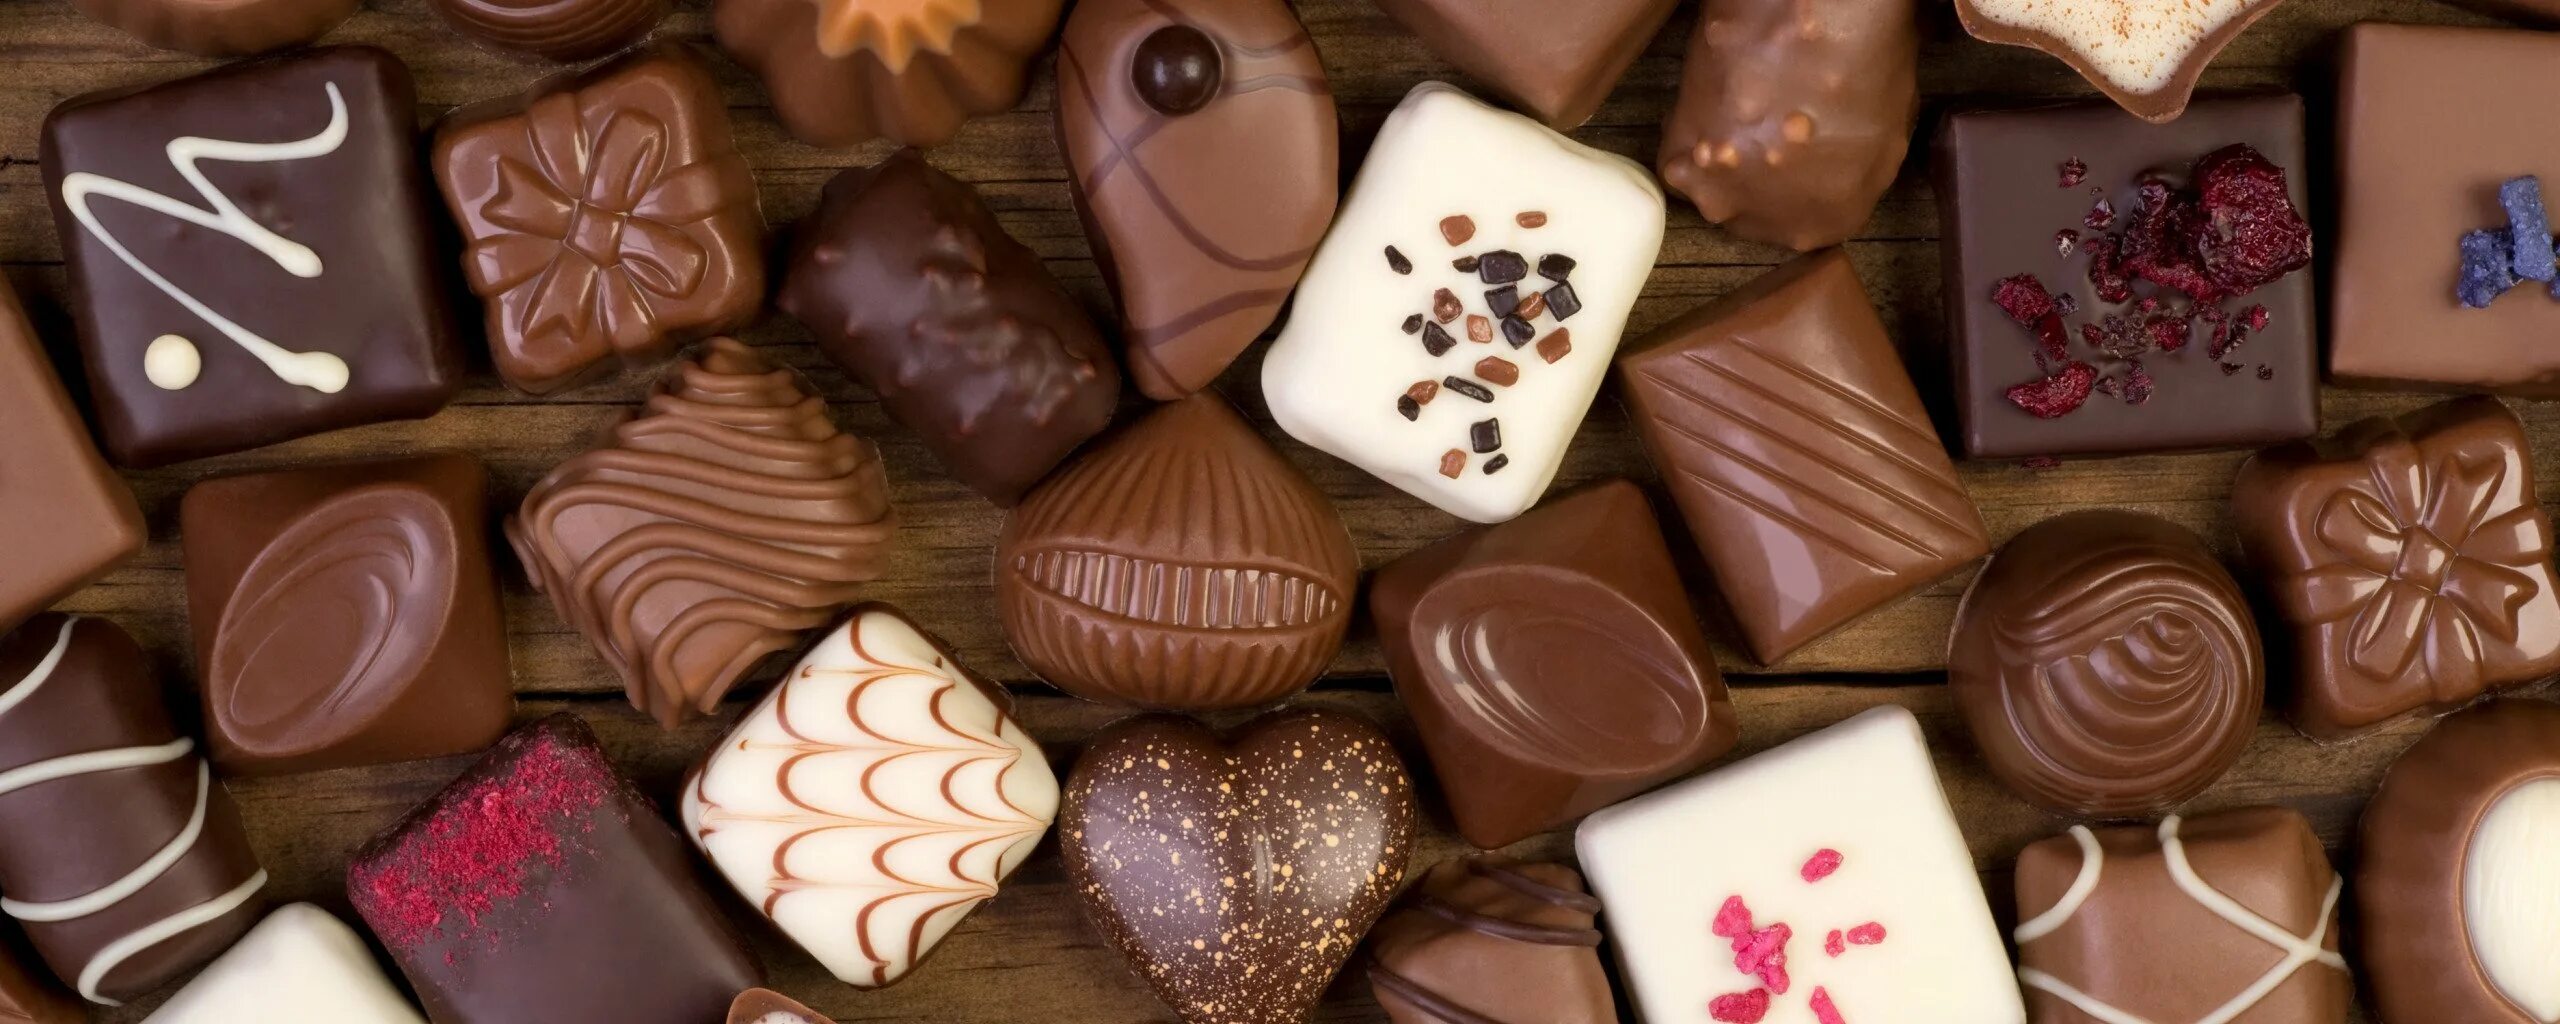 Видеть много конфет. Шоколадные конфеты. Конфеты шоколад. Шоколад картинки красивые. Много шоколадных конфет.